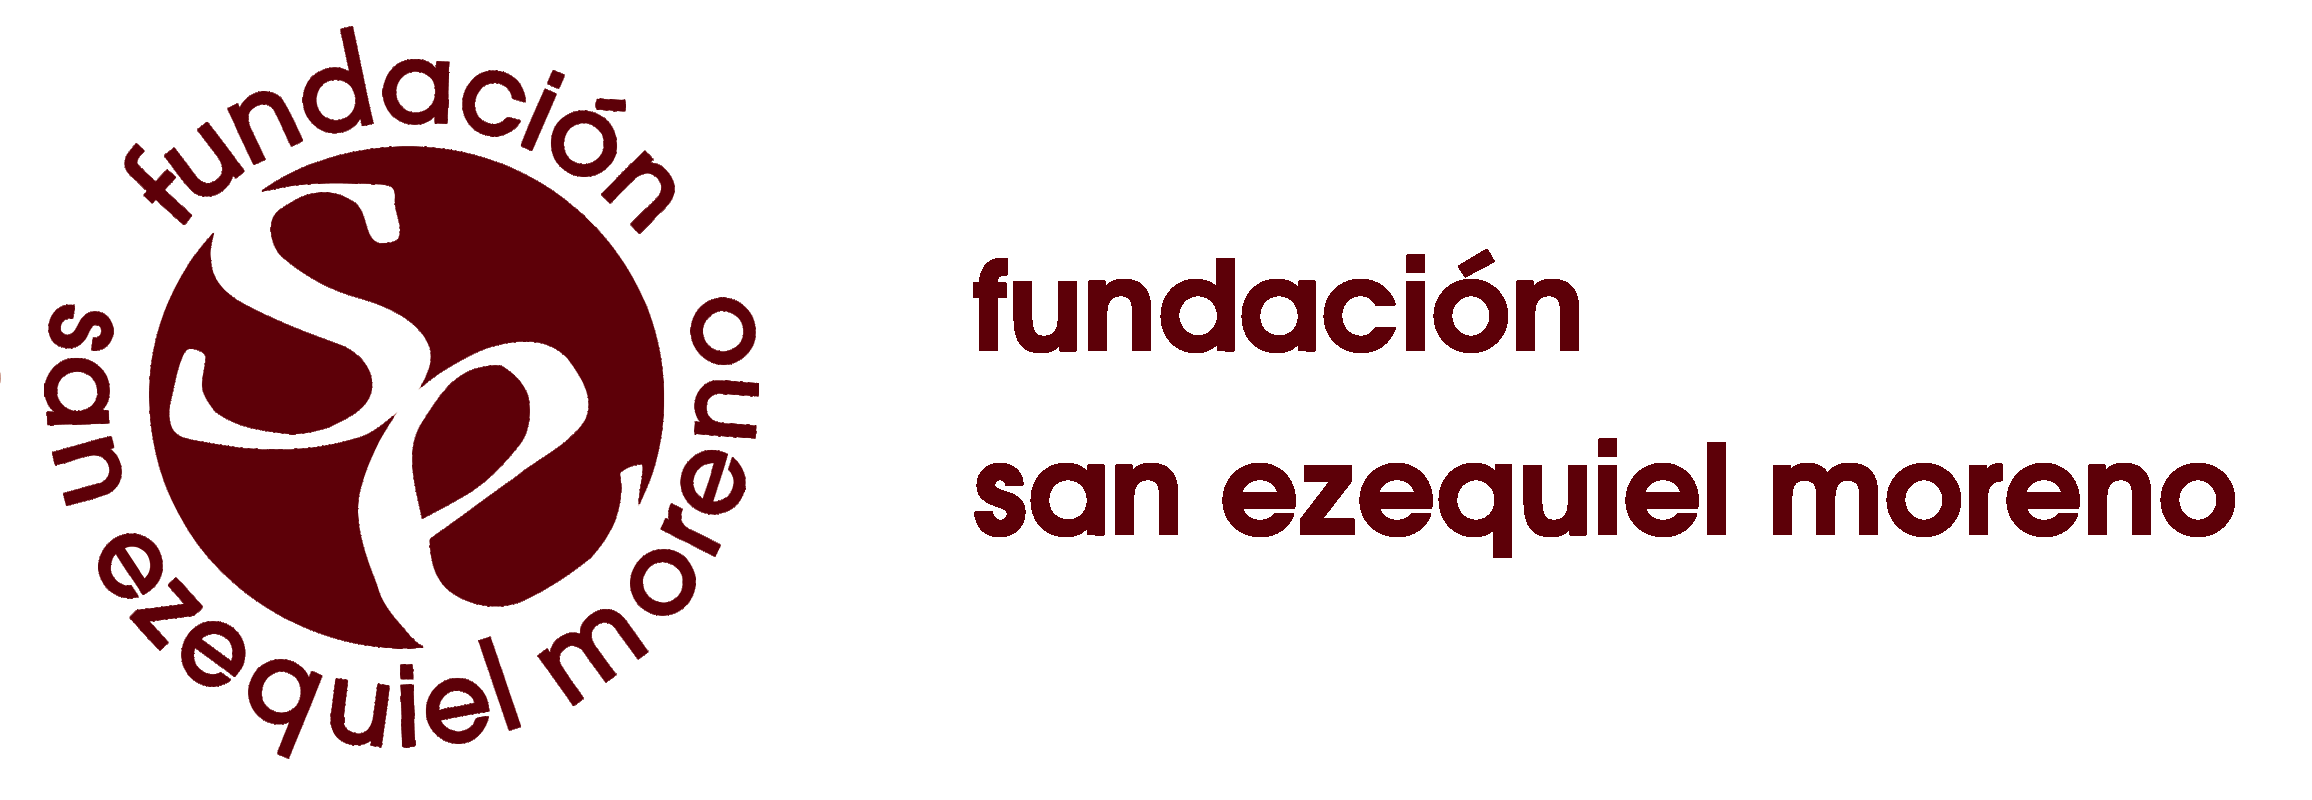 Fundación San Ezequiel Moreno